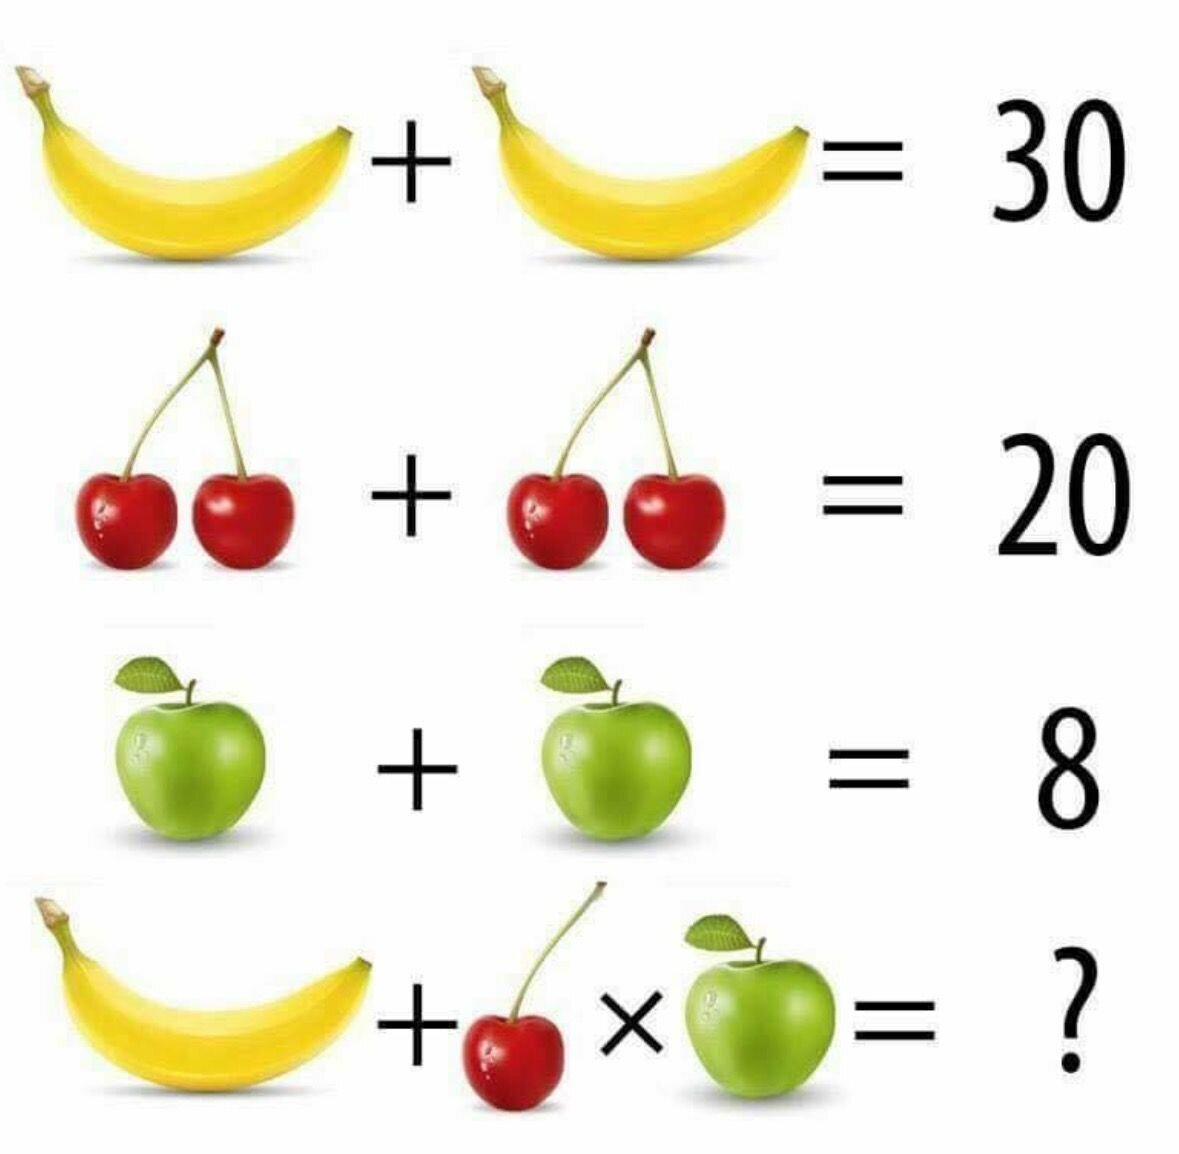 Задачи про фрукты. Задачи с фруктами на логику. Логические задачки в картинках. Математические задачки в картинках. Задачки с предметами.